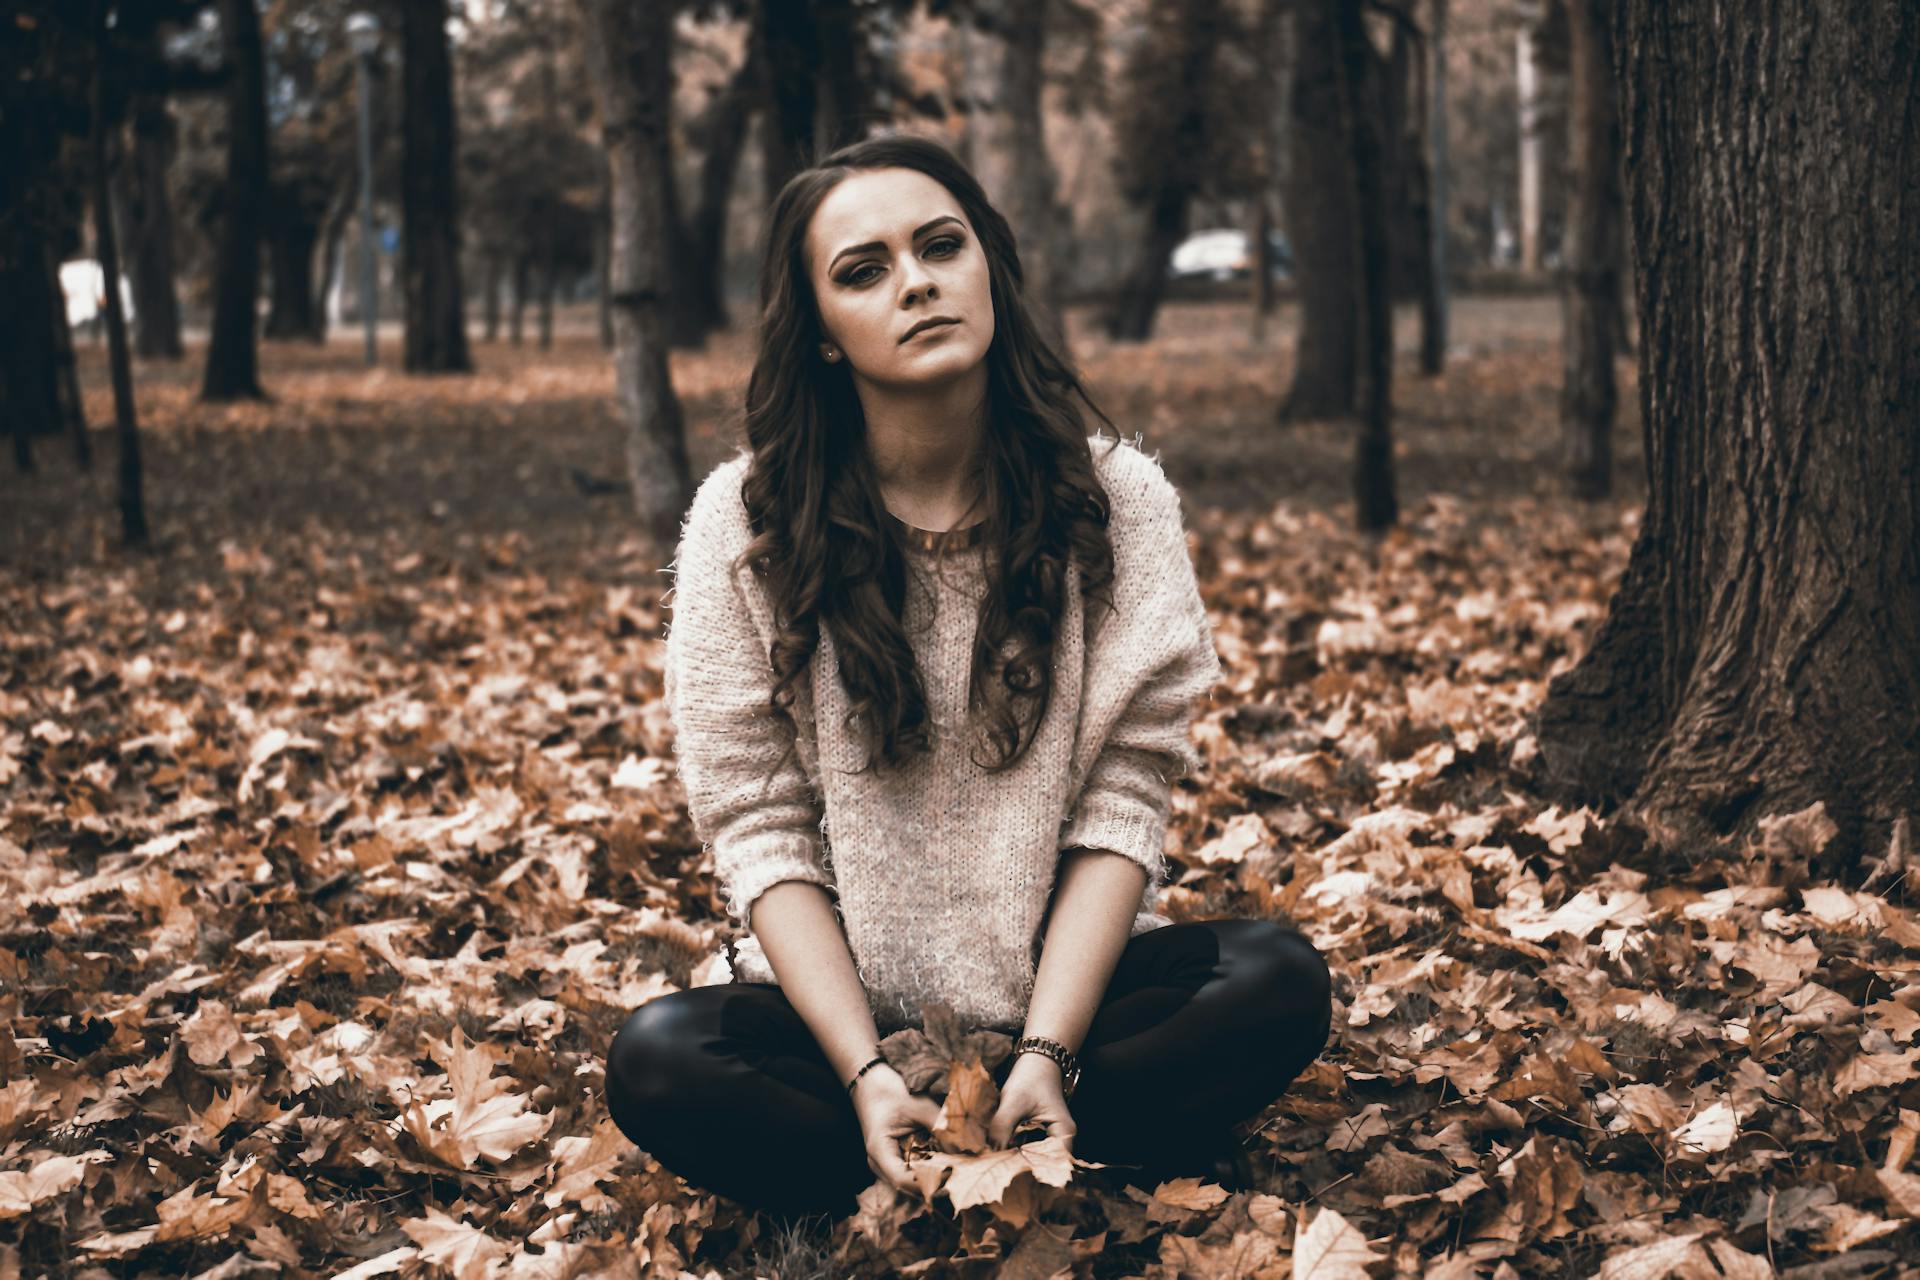 Una joven sentada en un bosque sujetando hojas caídas | Fuente: Pexels